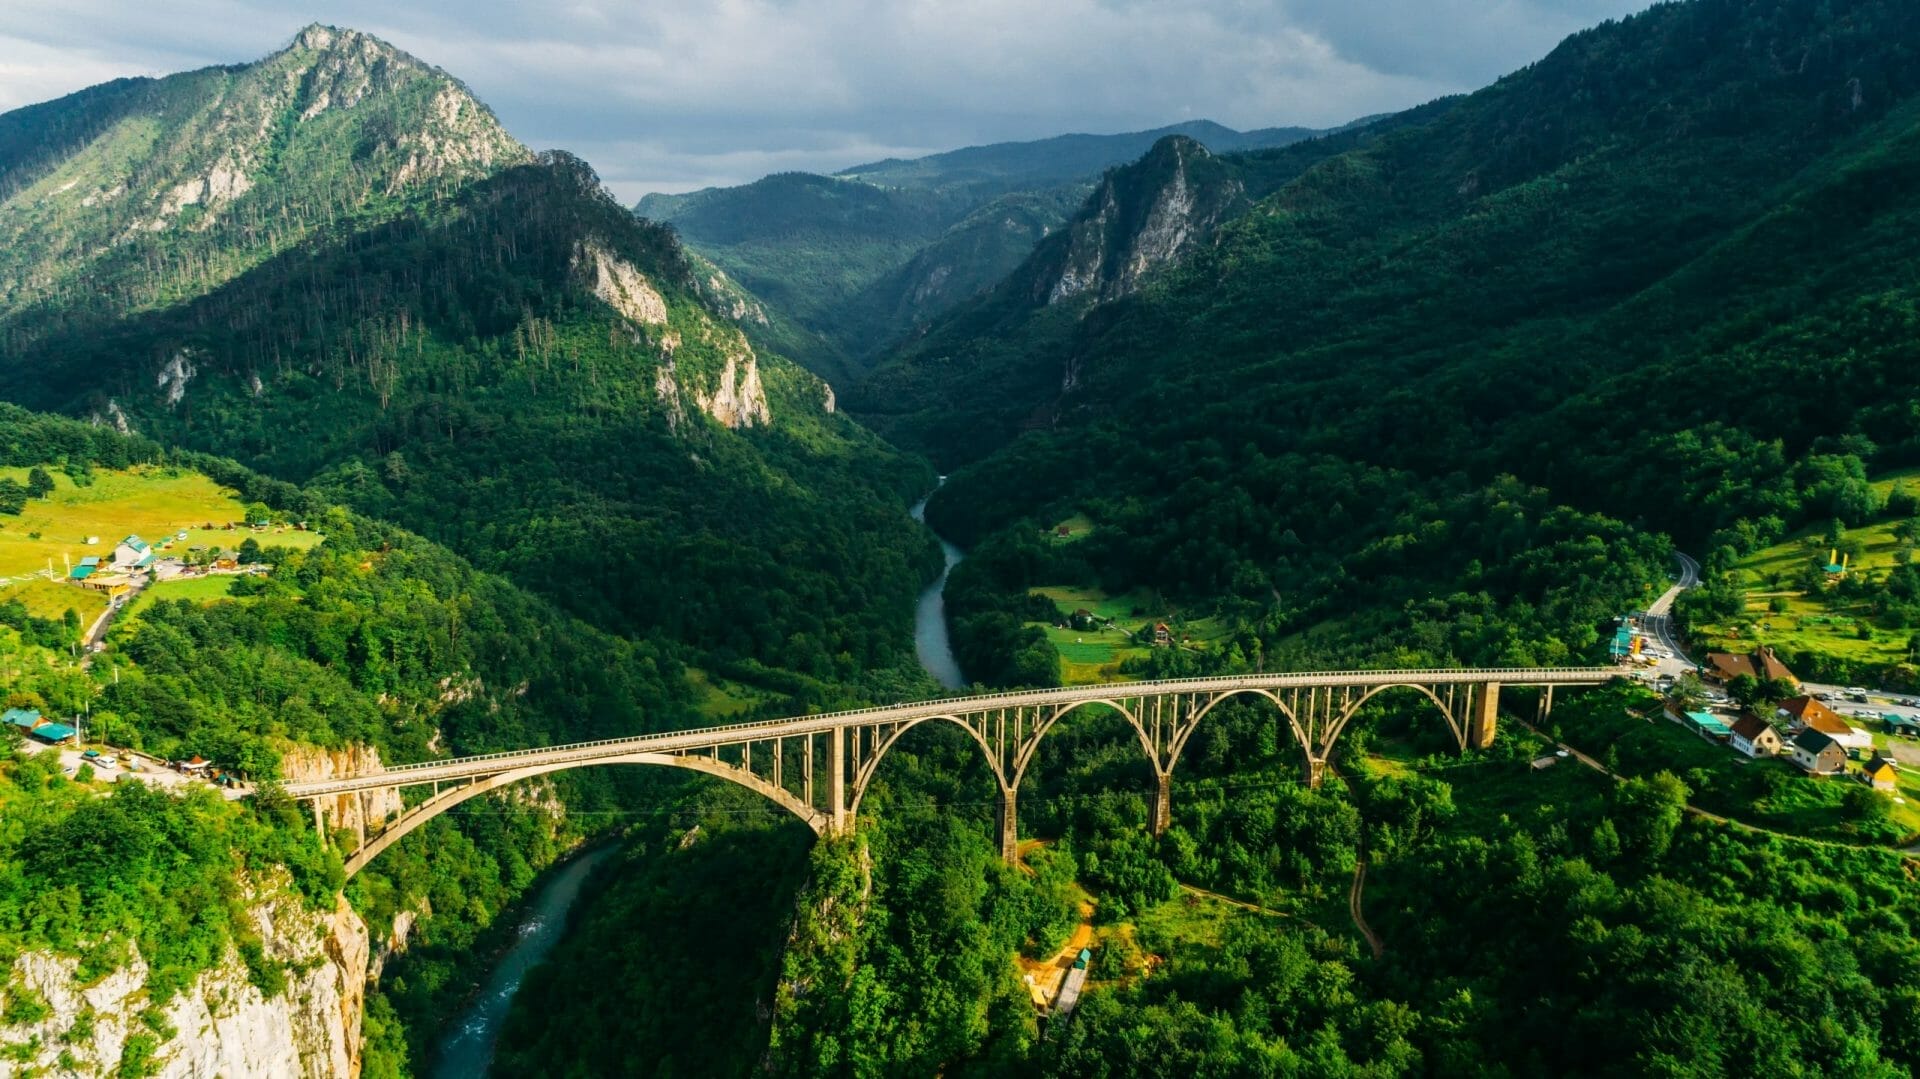 Vista aérea del puente arco de Đurđevića Tara en las montañas, uno de los puentes de automóviles más altos de Europa.